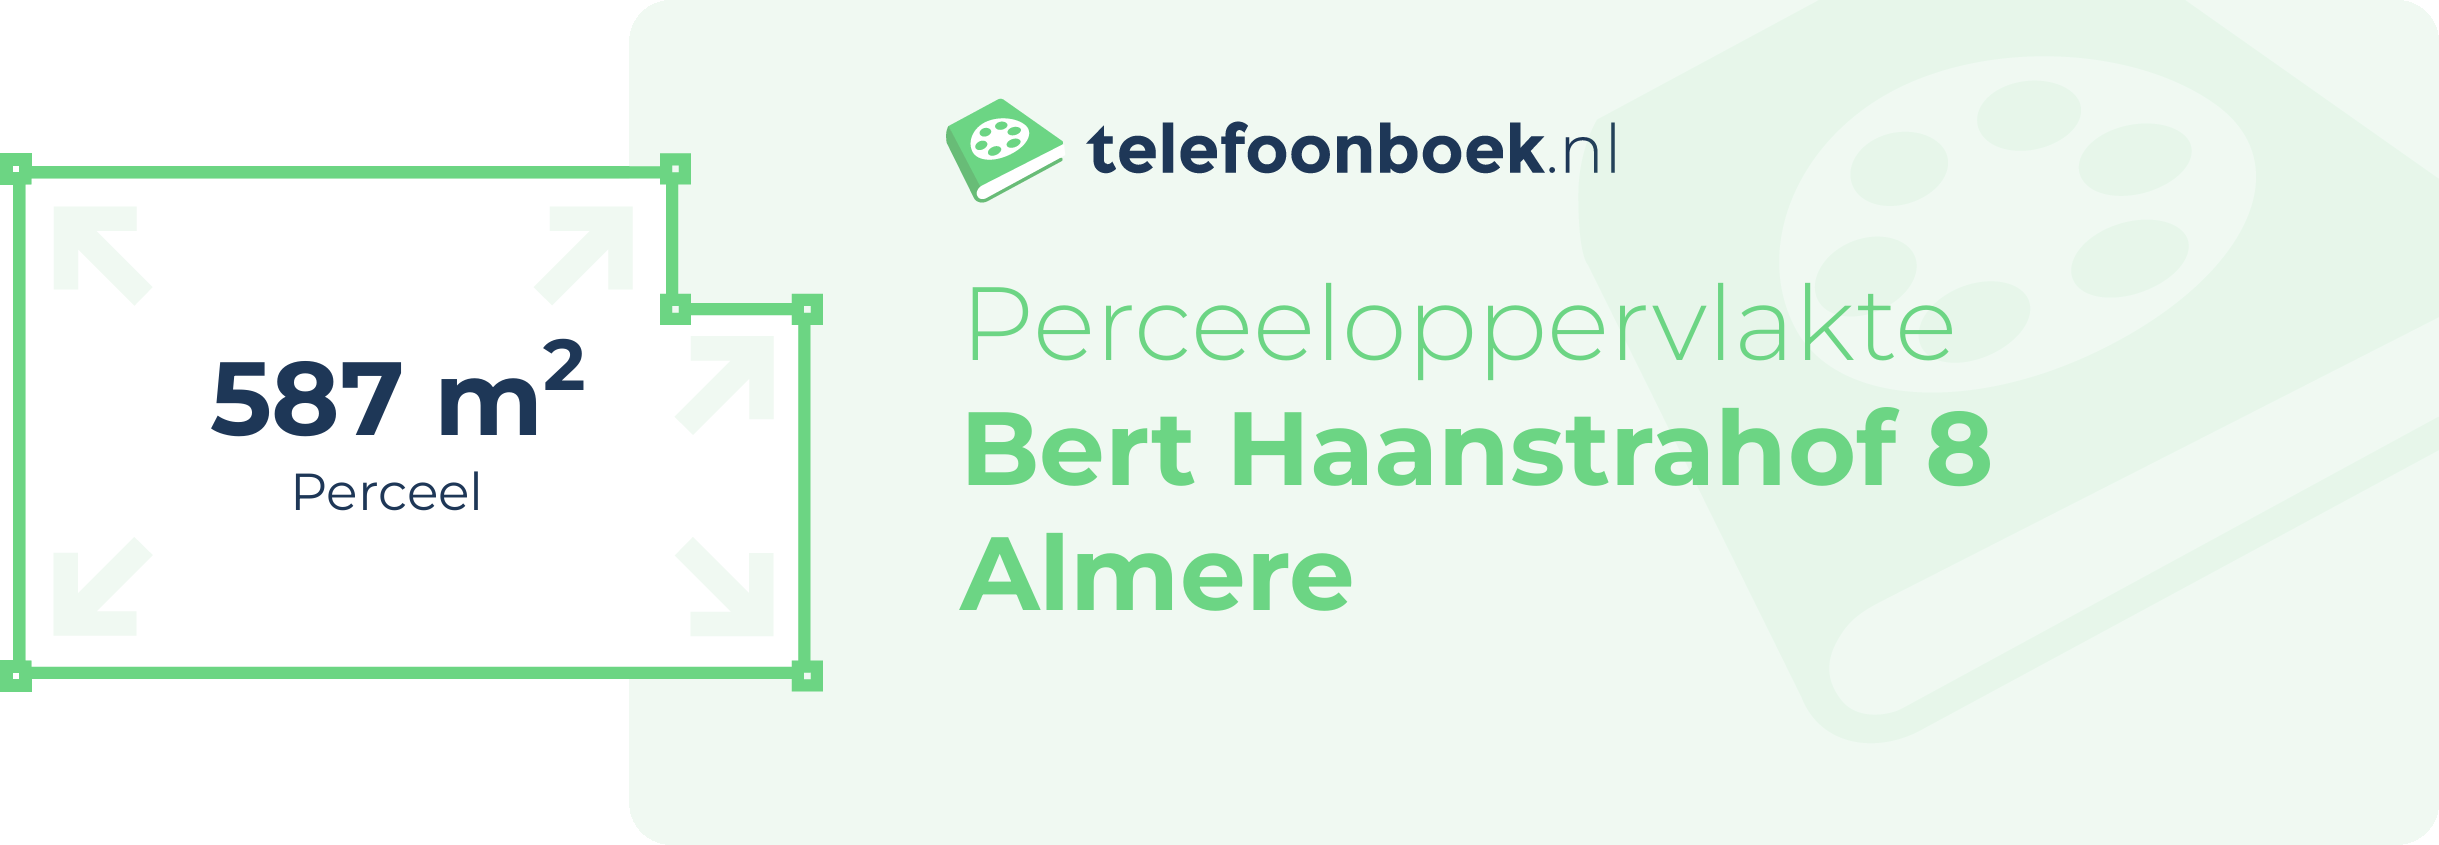 Perceeloppervlakte Bert Haanstrahof 8 Almere